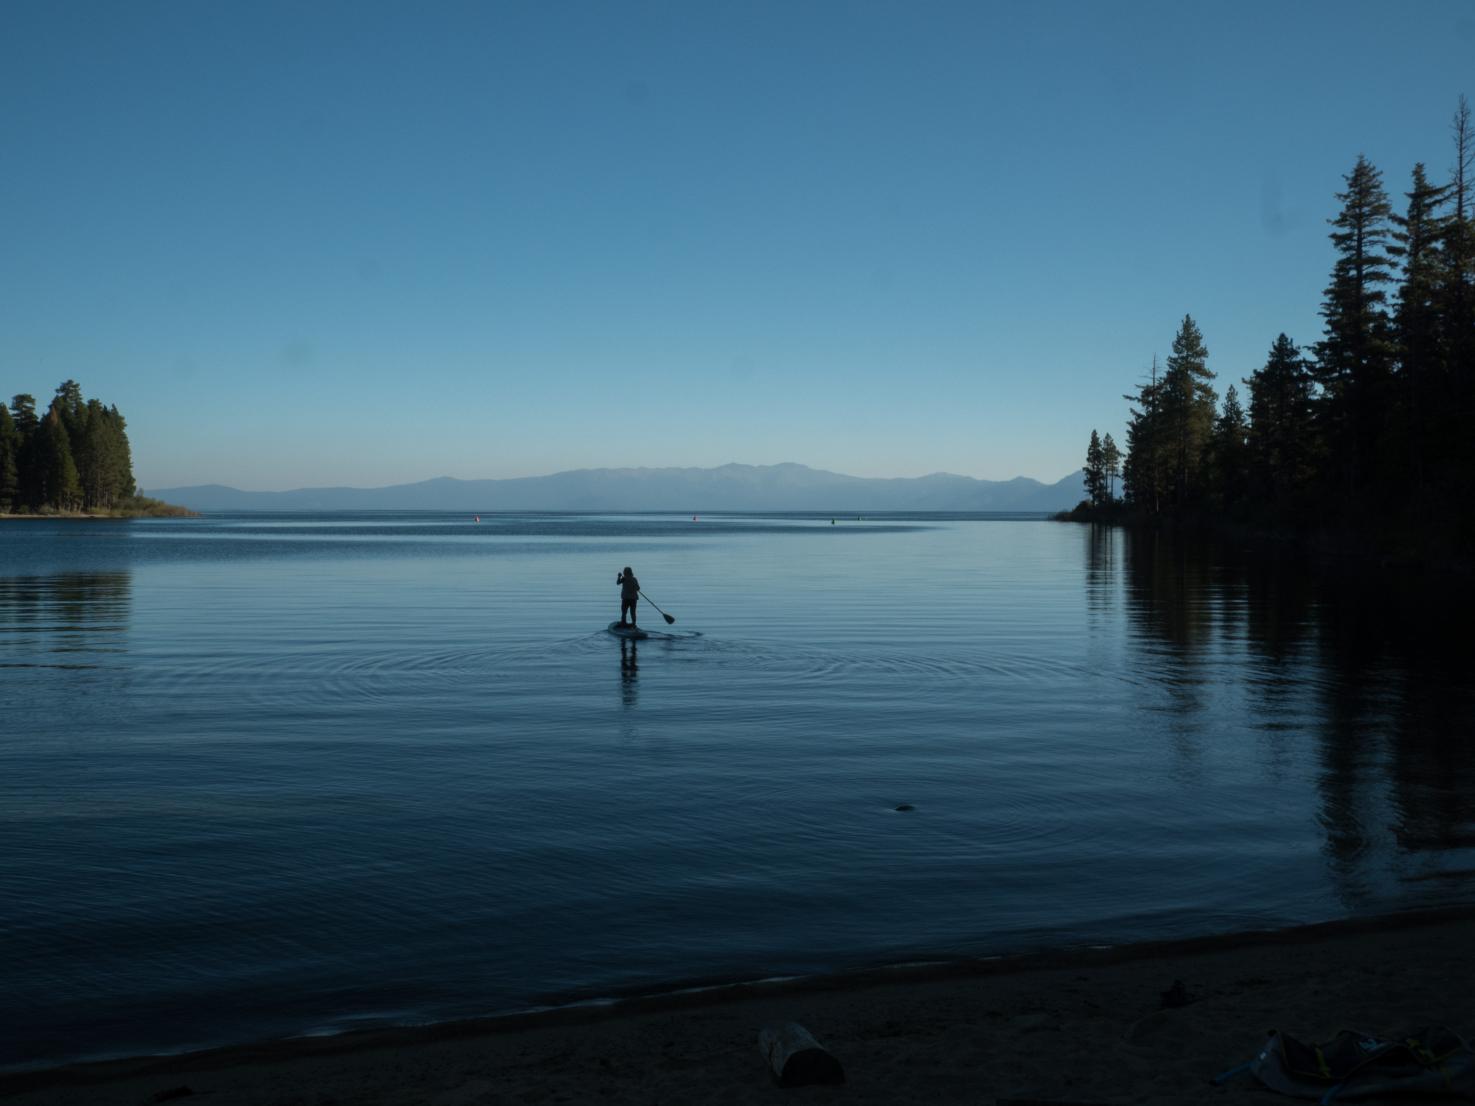 Paddleboarding on Lake Tahoe